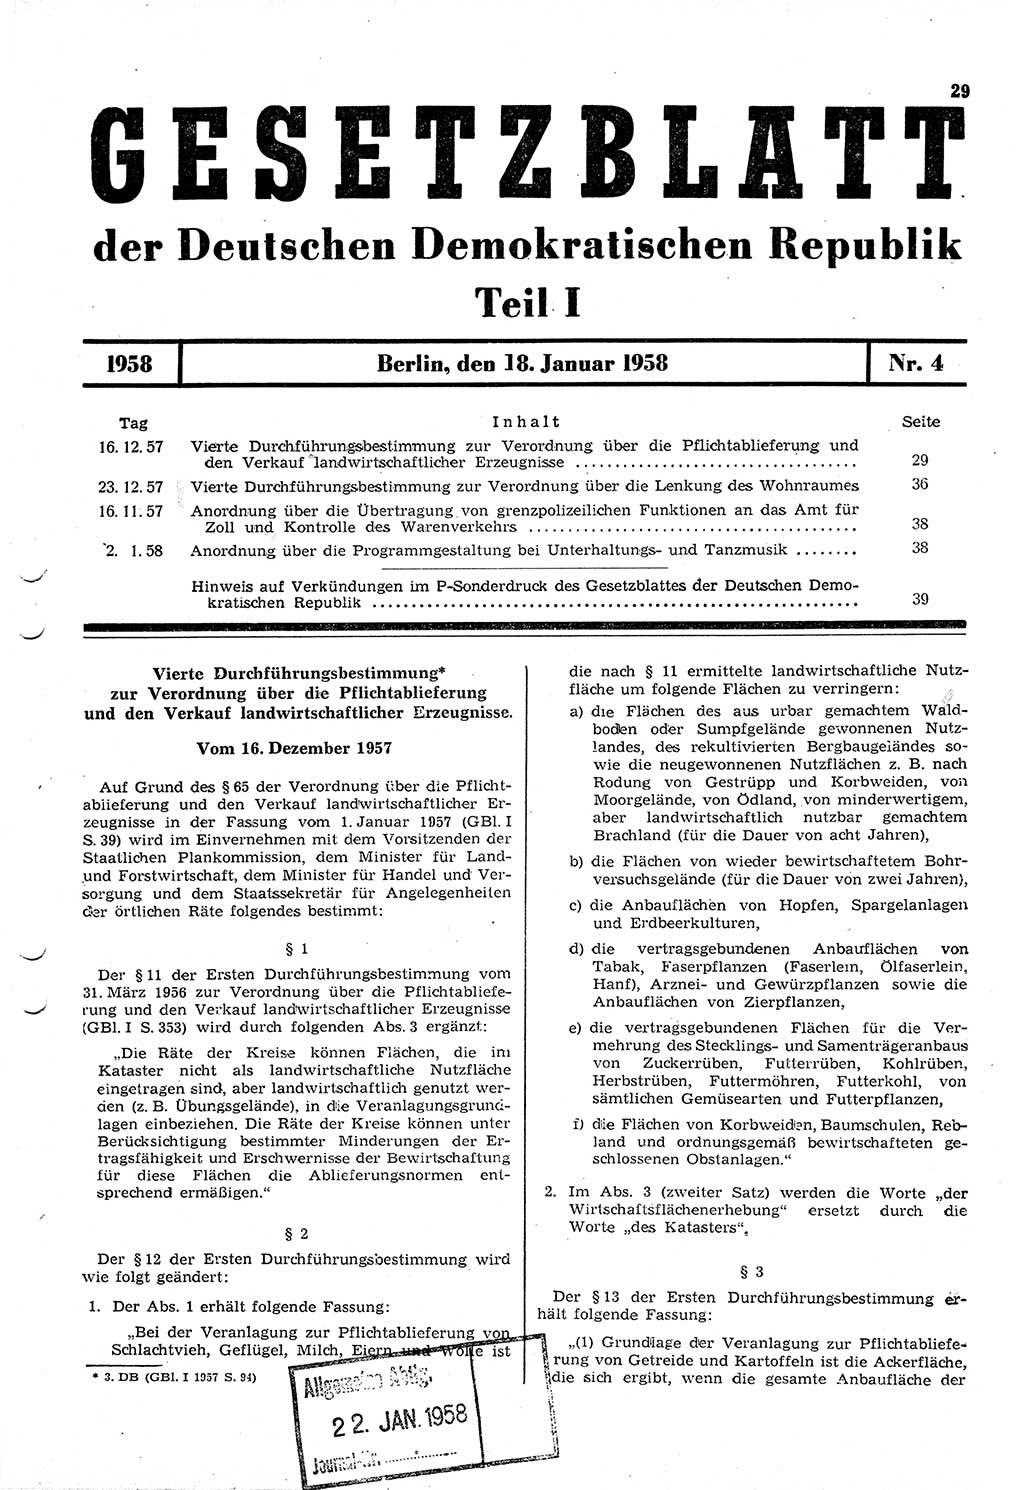 Gesetzblatt (GBl.) der Deutschen Demokratischen Republik (DDR) Teil Ⅰ 1958, Seite 29 (GBl. DDR Ⅰ 1958, S. 29)